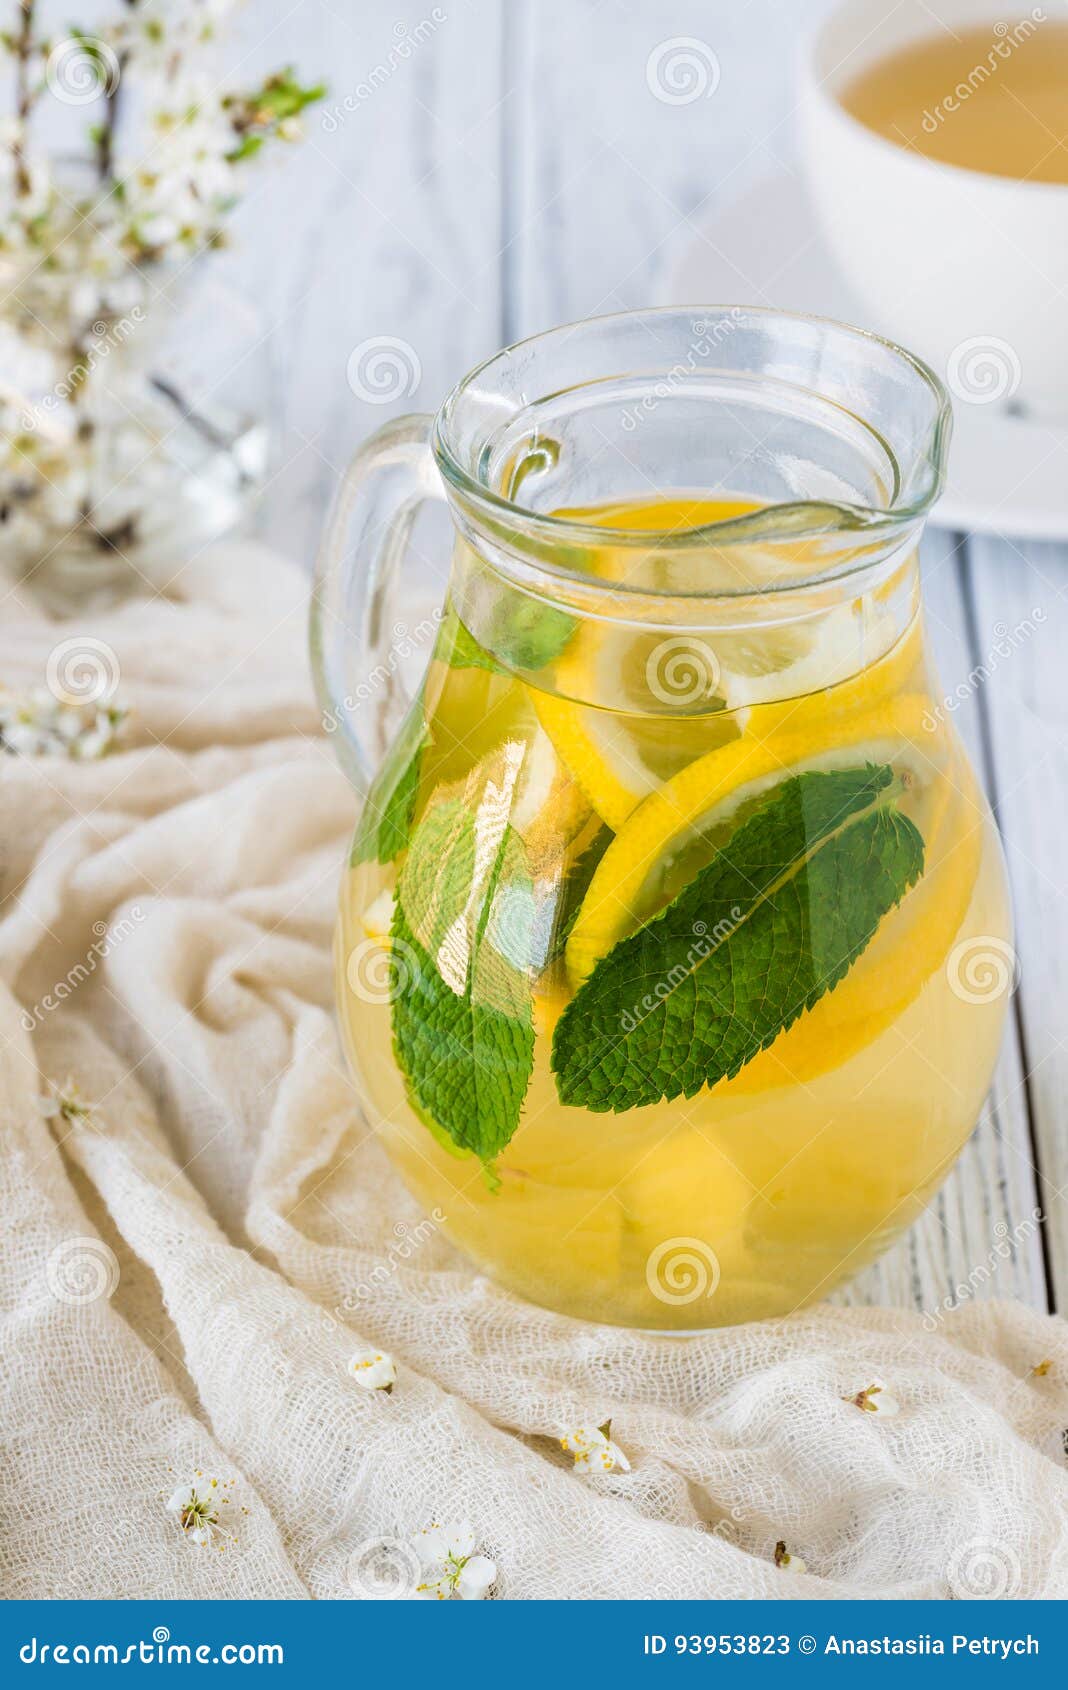 Чай с мятой и лимоном спектакль. Имбирь мята лимон чай. Имбирно мятный чай. Имбирный час в стеклянной банке. Чай мятно лимонно имбирный.